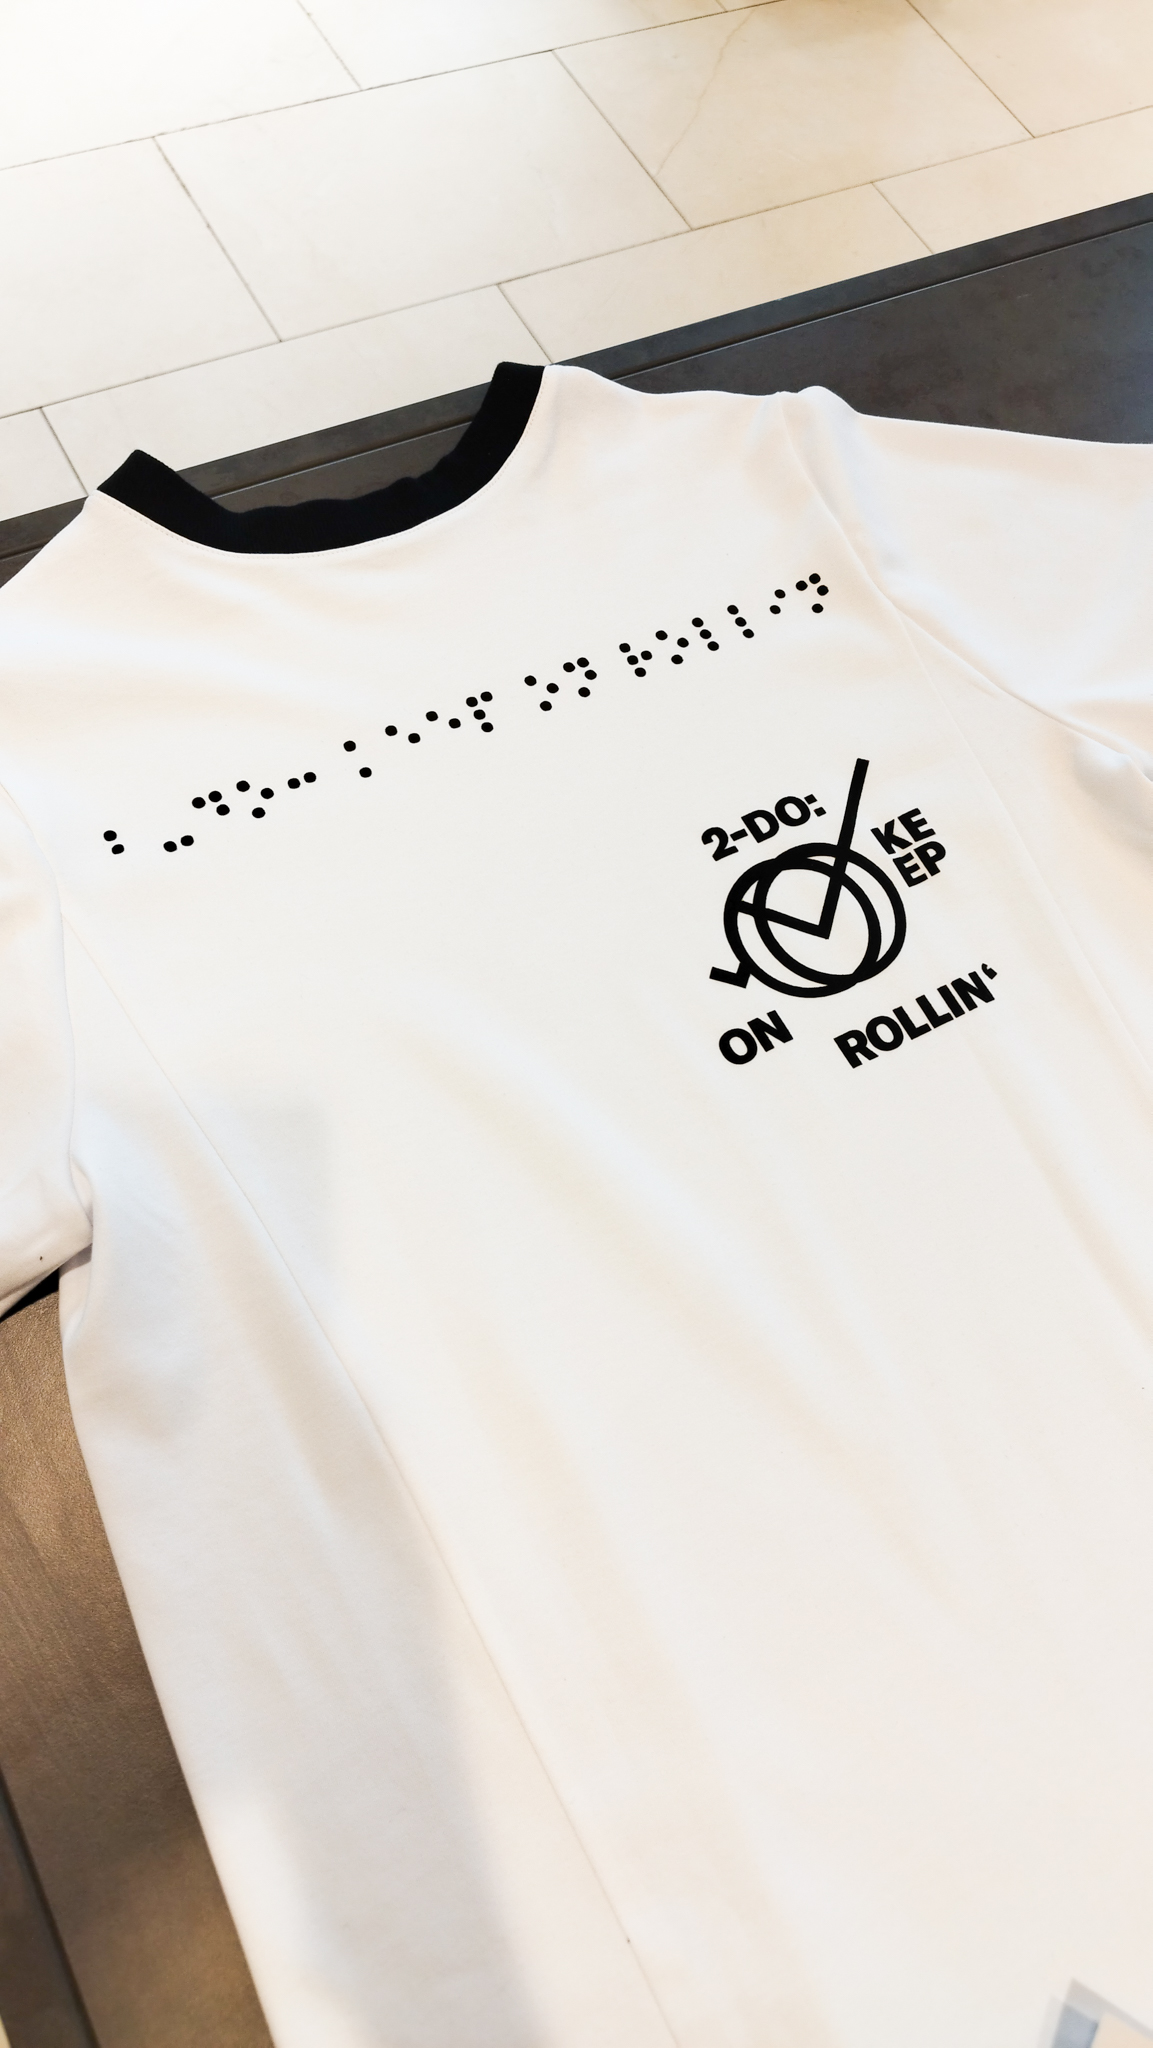 weißes T-Shirt mit schwarzem Druck. Der Druck zeigt ein Design mit dem Spruch: 2-Do Keep on rollin'. Dieser Druck ist in Brailleschrift übersetzt und ist groß auf das T-Shirt gedruckt.